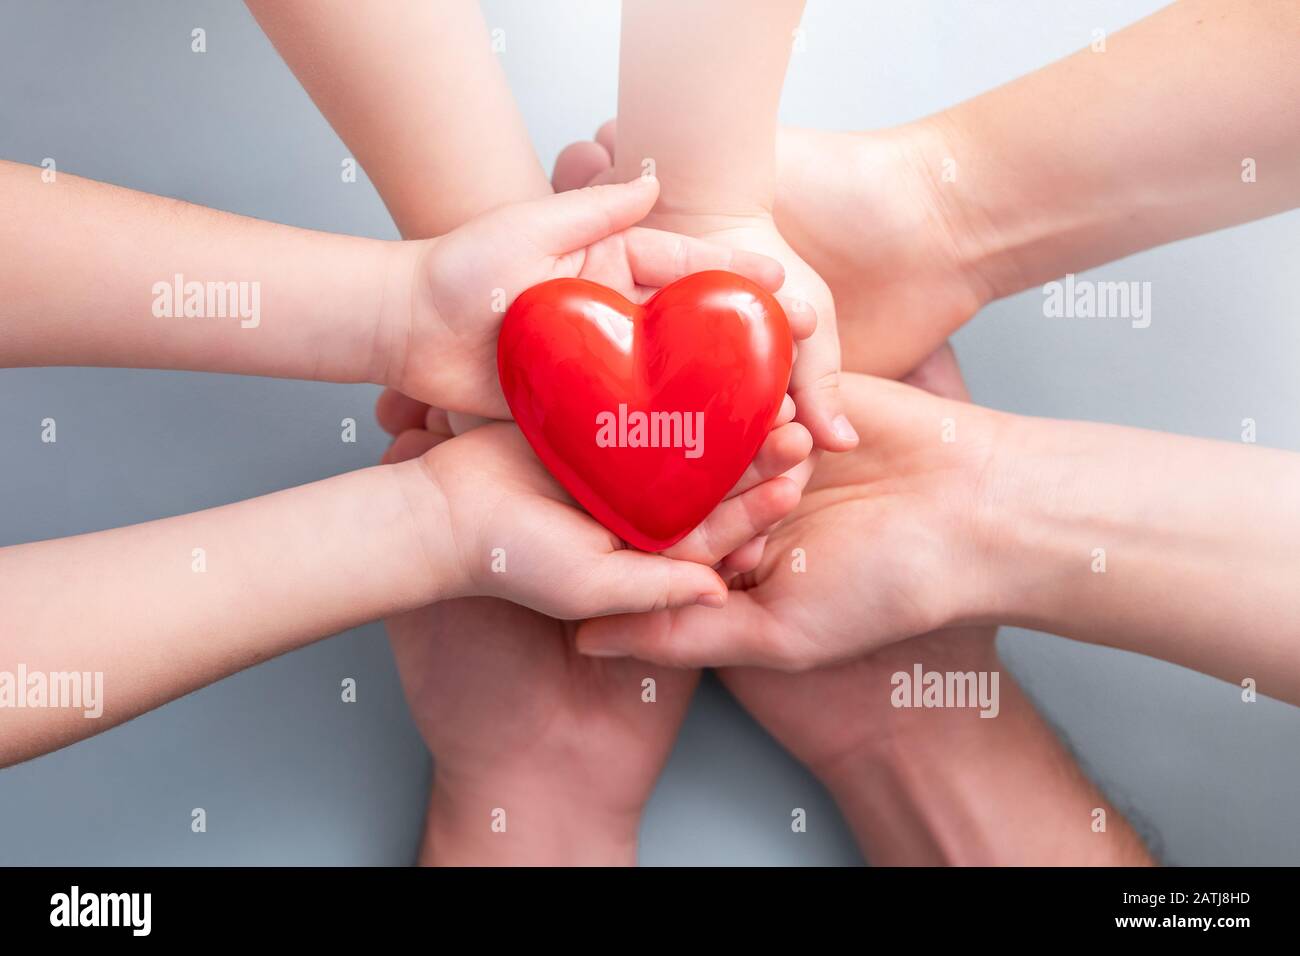 Un adulte, une mère, un père et un enfant ont un cœur rouge dans leurs mains. Concept pour la charité, l'assurance santé, l'amour, la journée internationale de cardiologie. Banque D'Images